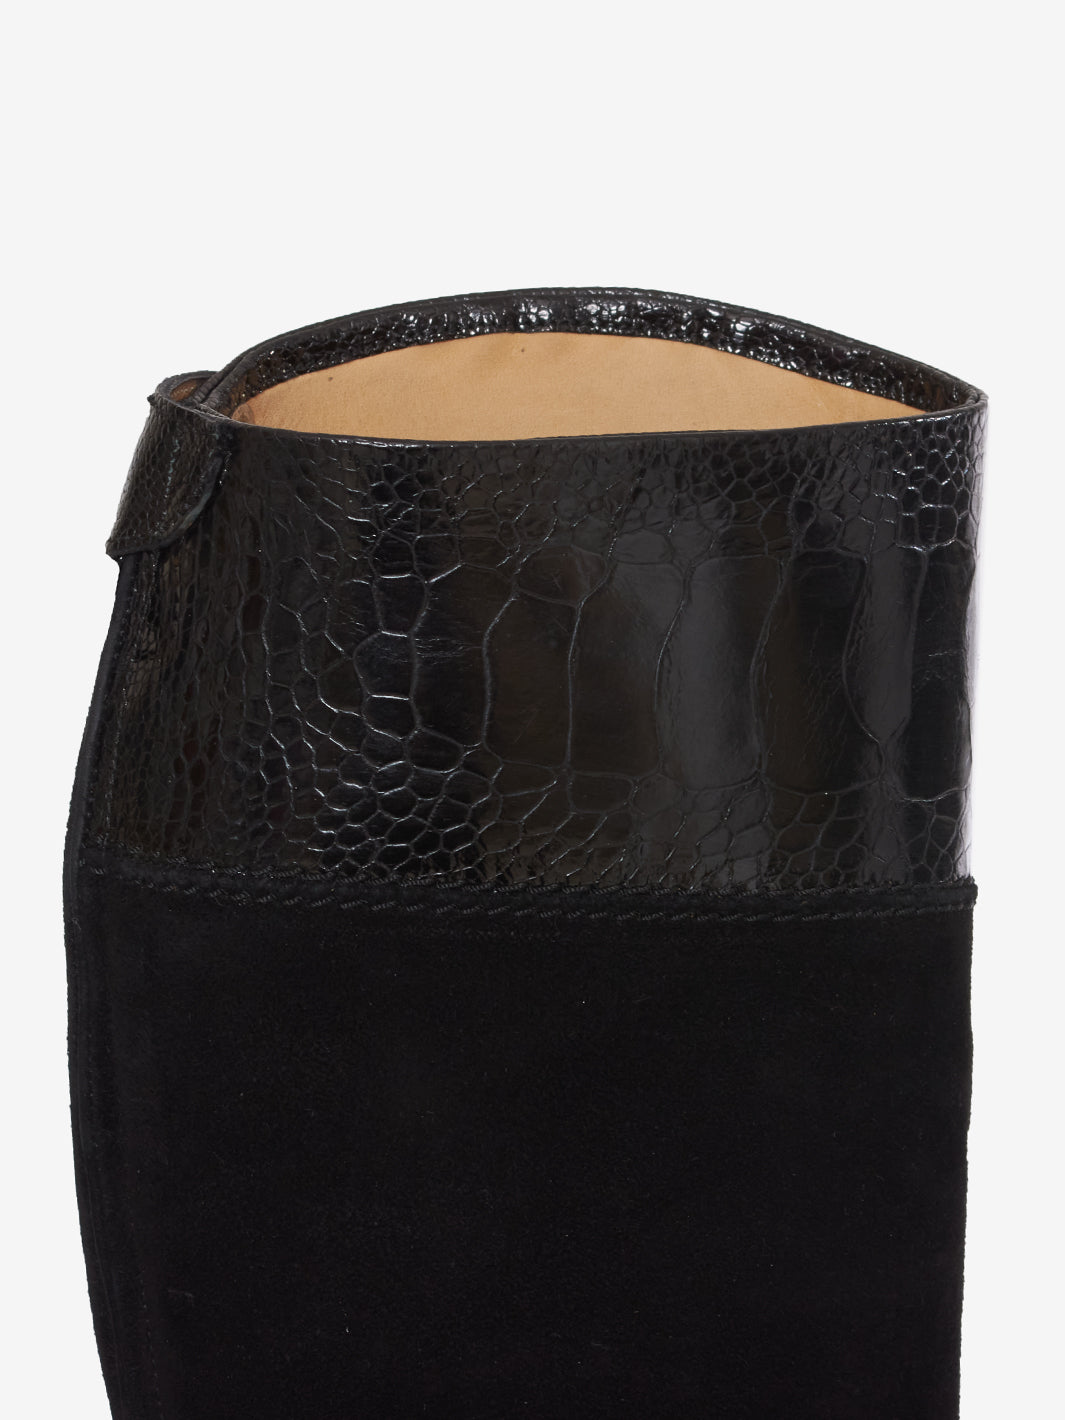 Alberto Fasciani Black Leather Boots